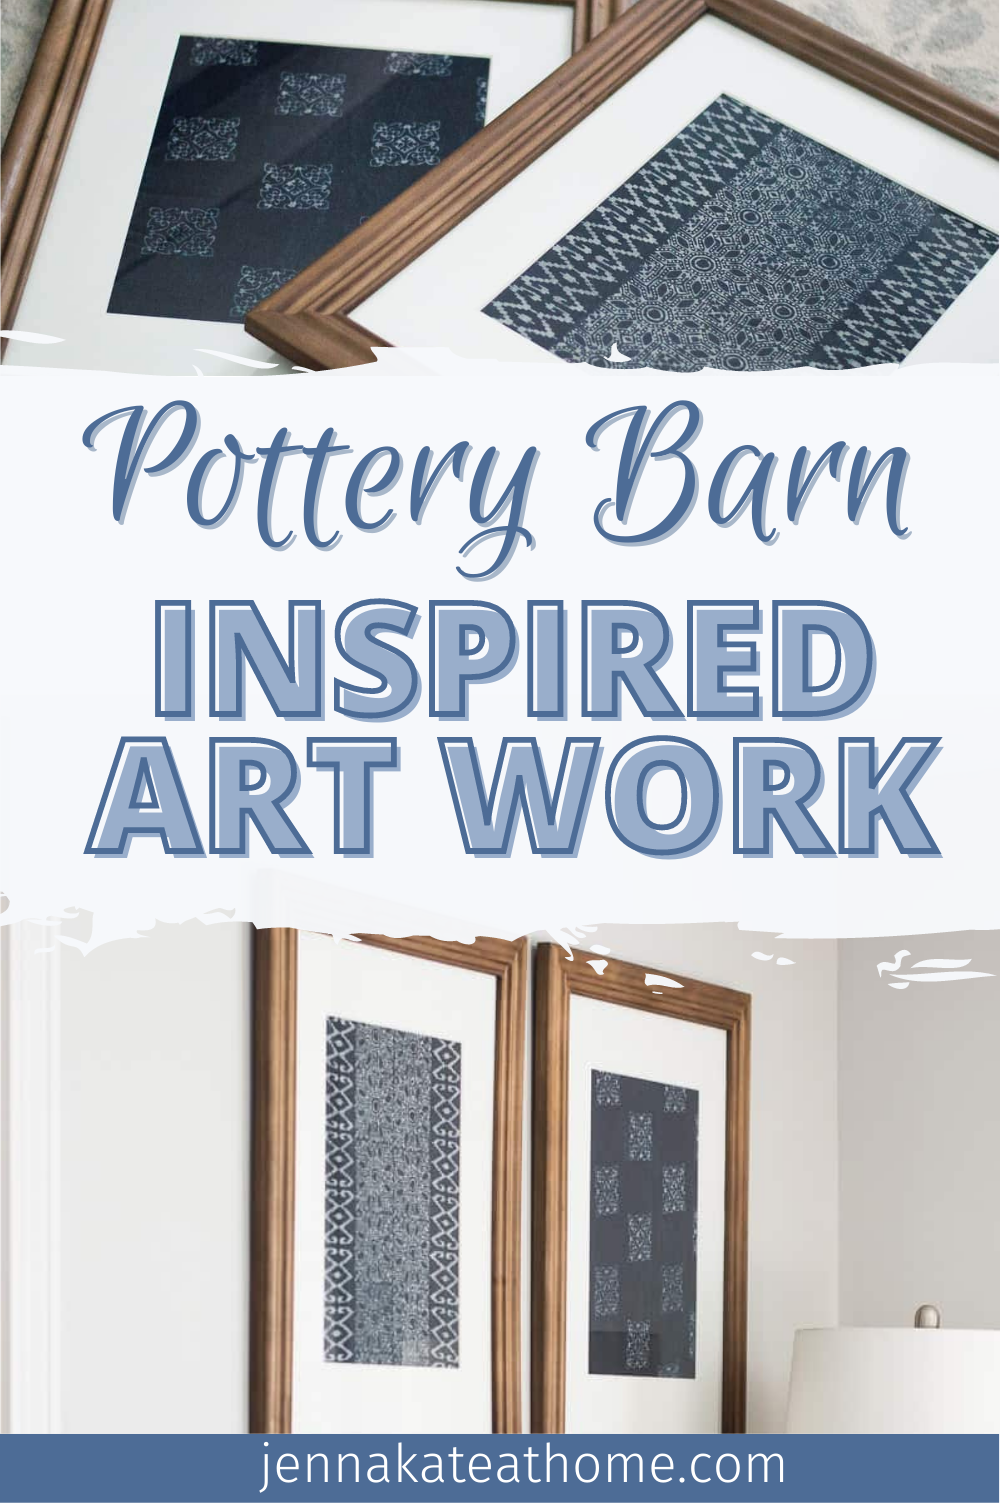 Pottery Barn Inspired Art Work